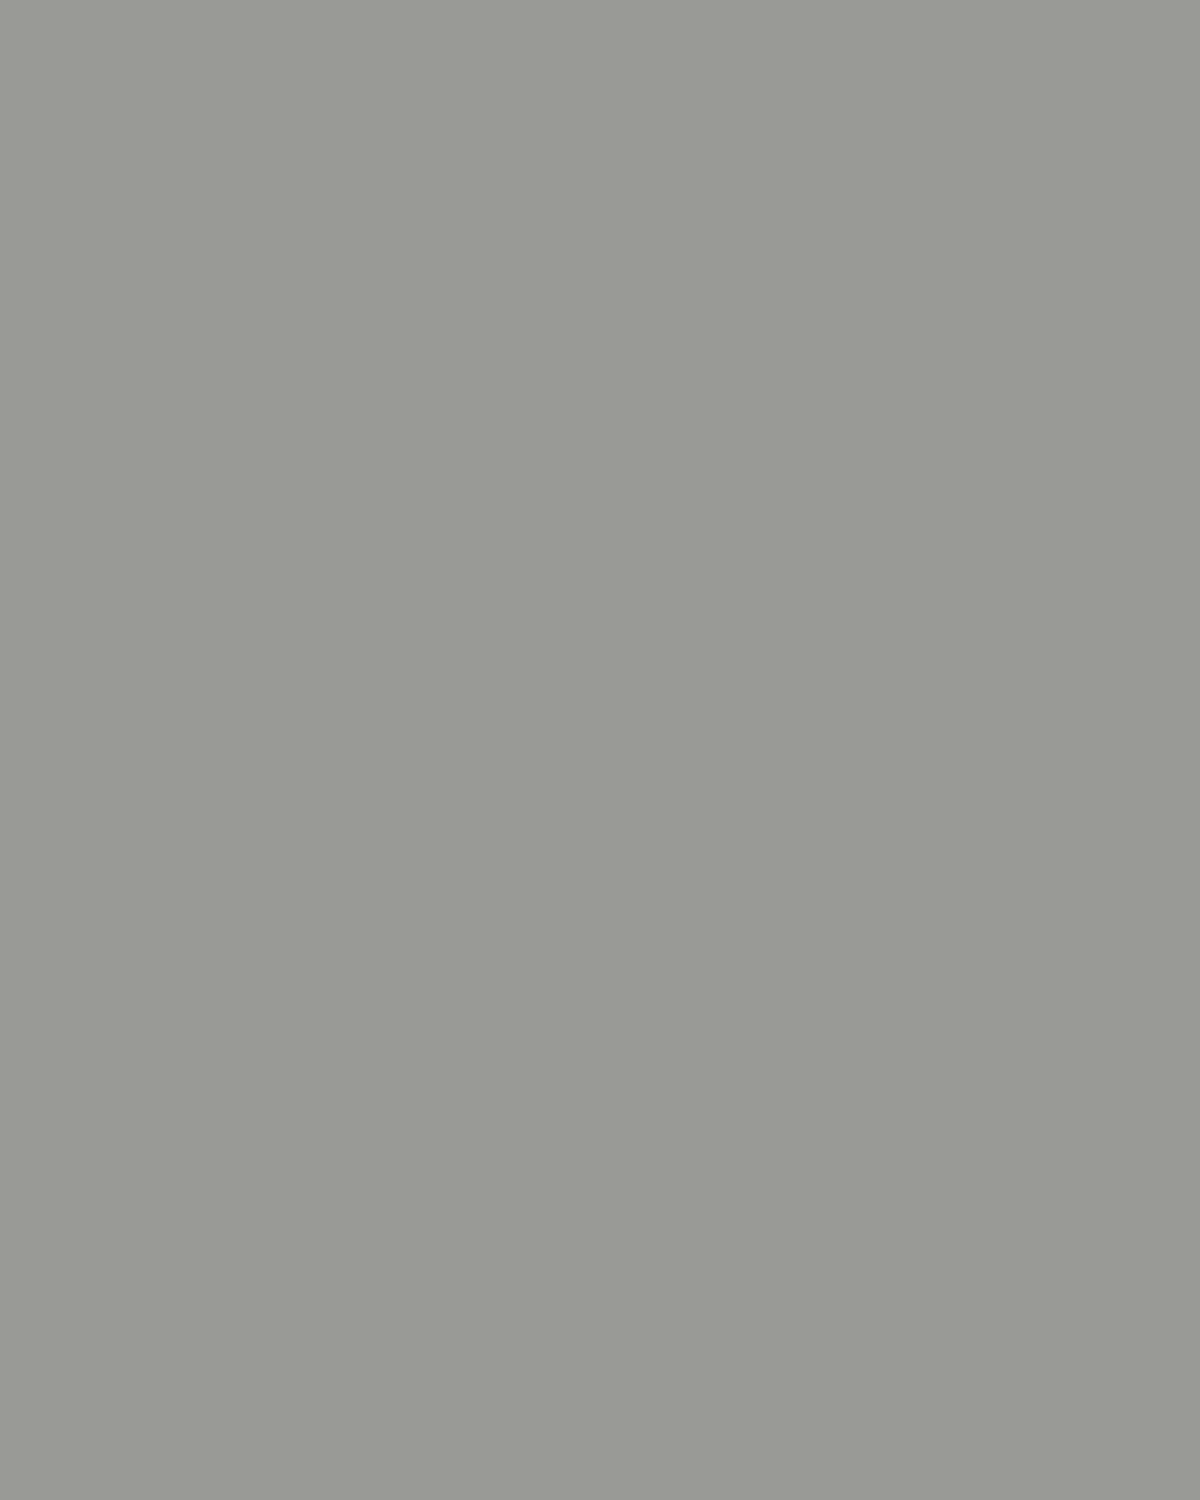 Игорь Грабарь. Февральская лазурь (фрагмент). 1904. Государственная Третьяковская галерея, Москва